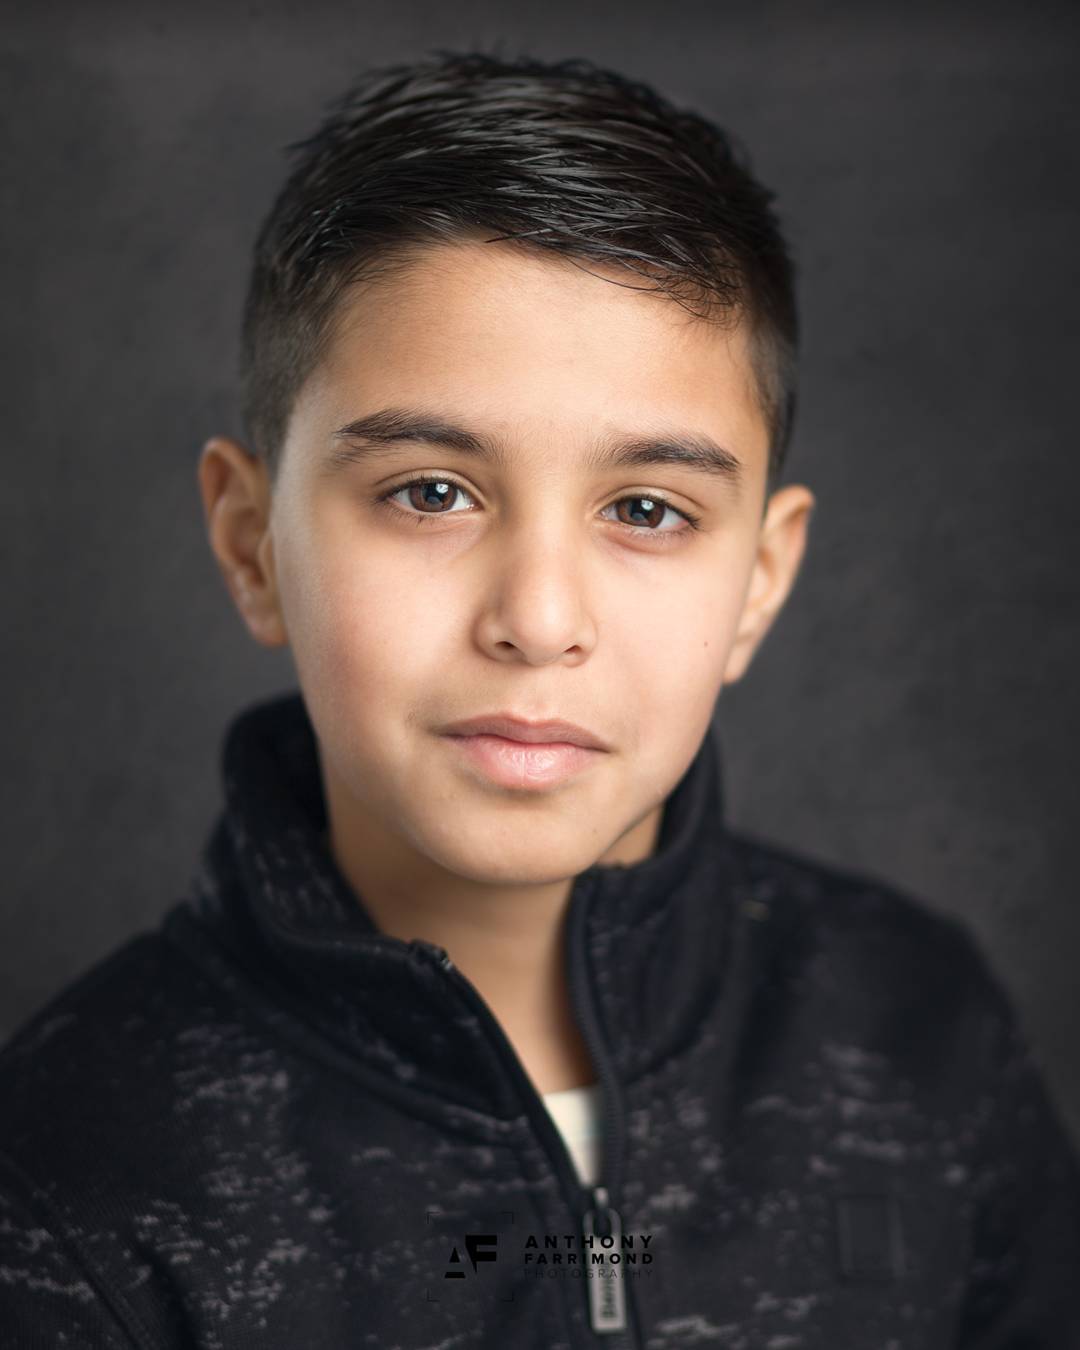 Child Actors Headshot | Anthony Farrimond Photography, Leeds & York